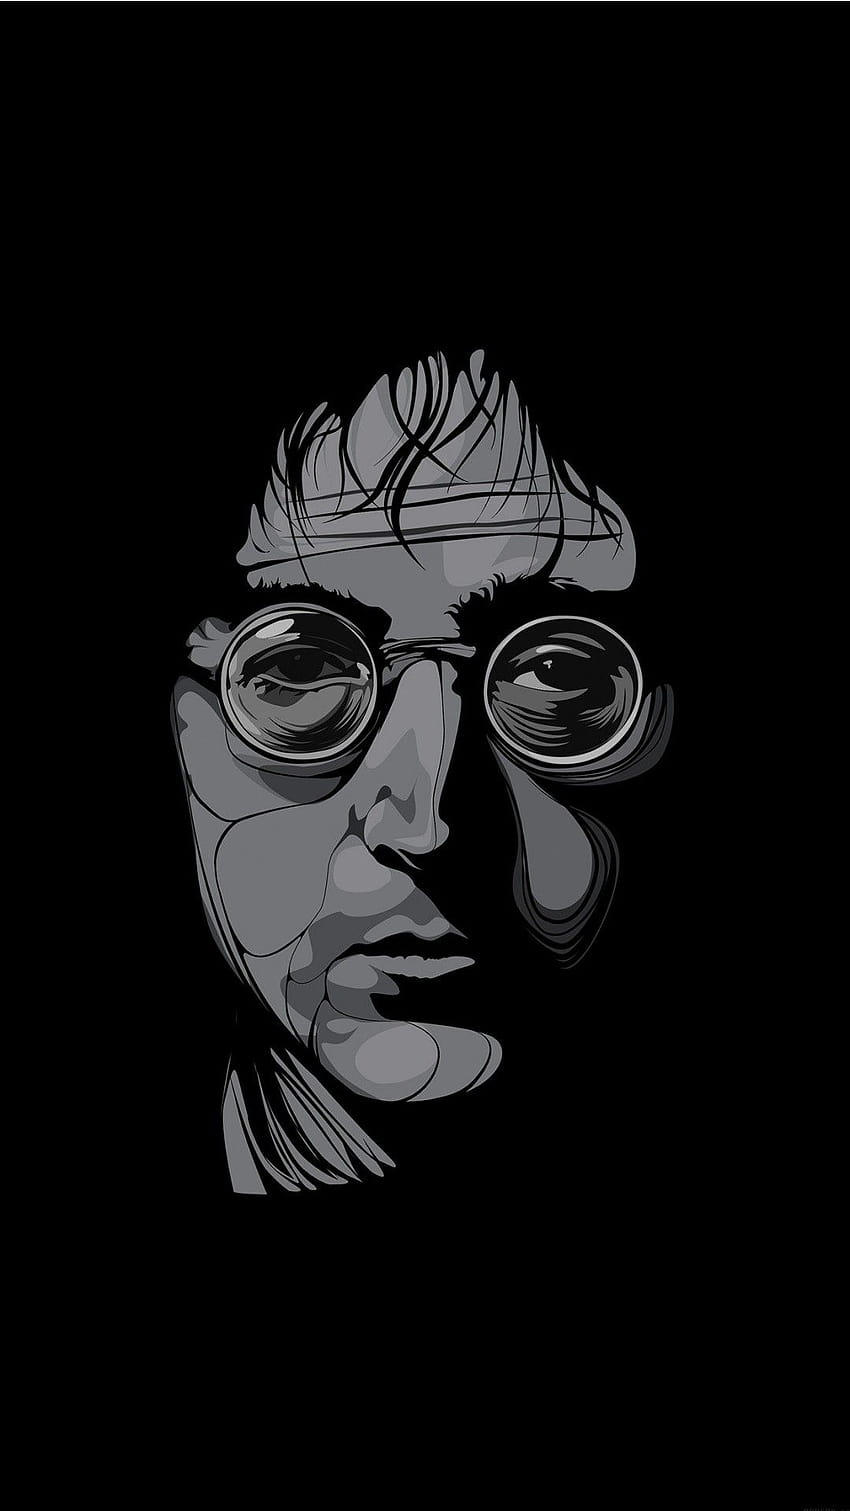 John Lennon, the beatles minimalis wallpaper ponsel HD